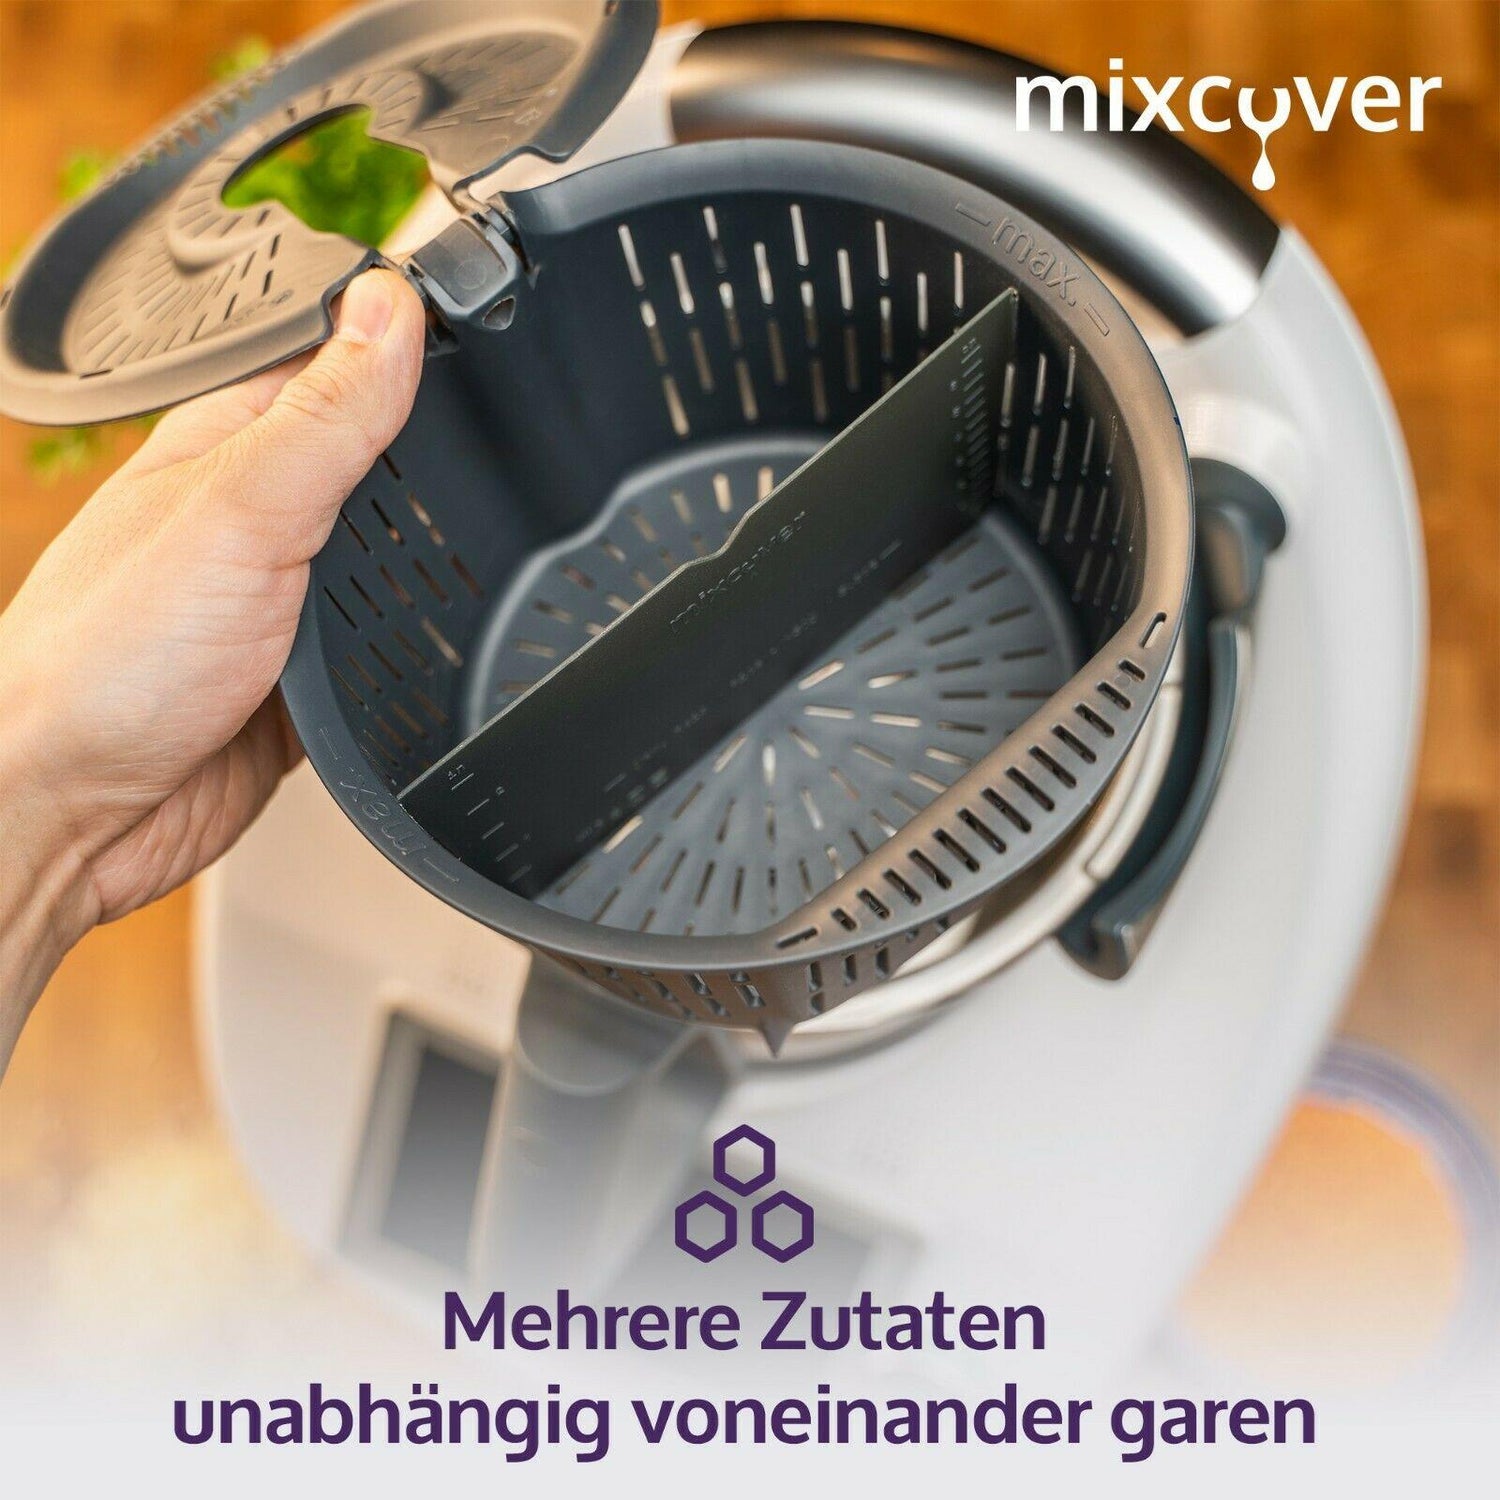 Mixcover Garcorteiler for Thermomix TM6 TM5 TM31, Mixtop Schaber